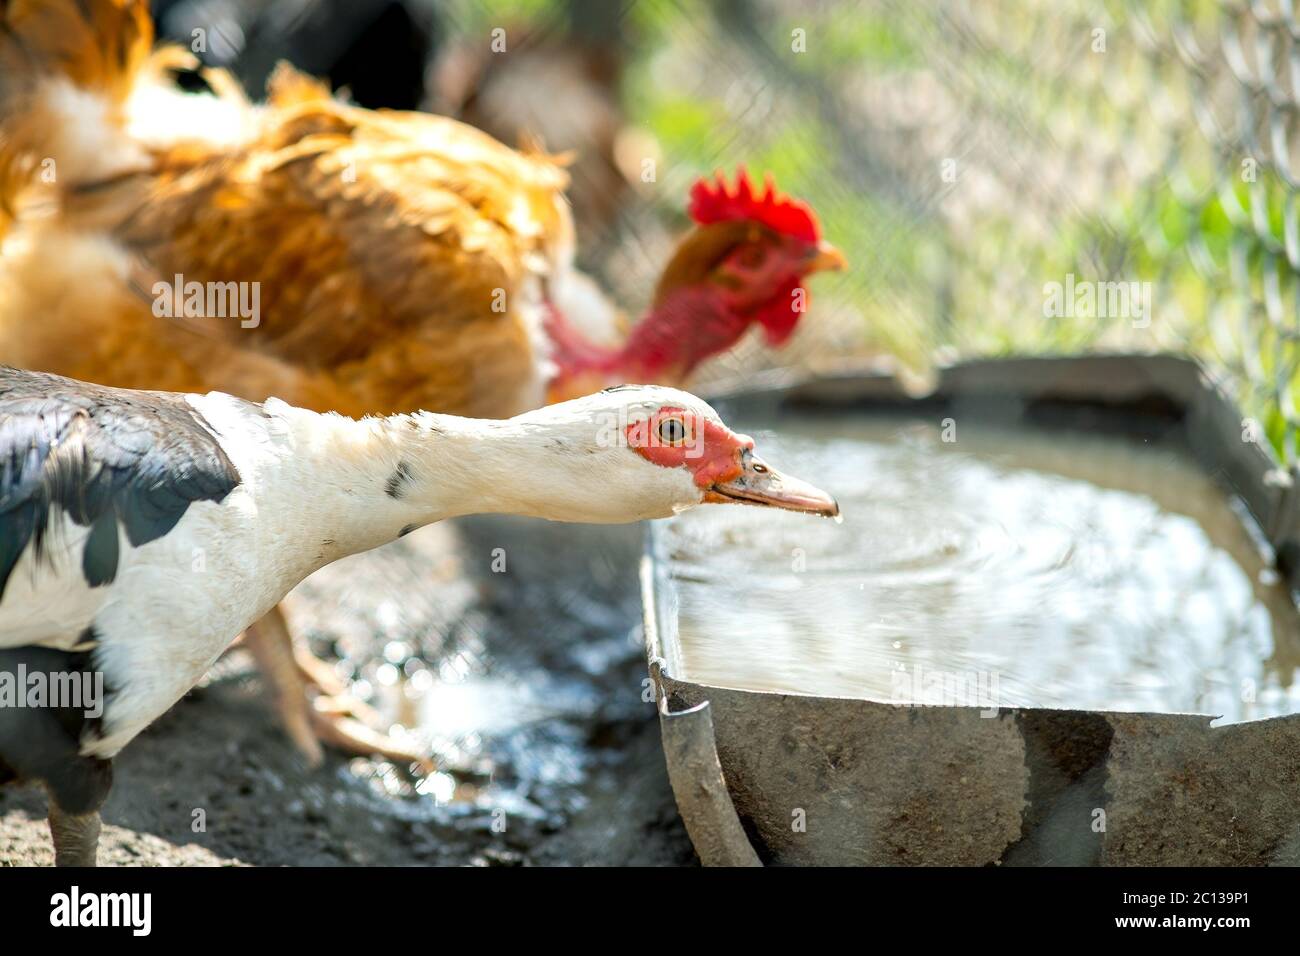 Alimentazione di anatra su cortile rurale tradizionale. Dettaglio di un uccello acquerello che beve acqua sul cortile fienile. Concetto di allevamento avicolo a gamma libera. Foto Stock